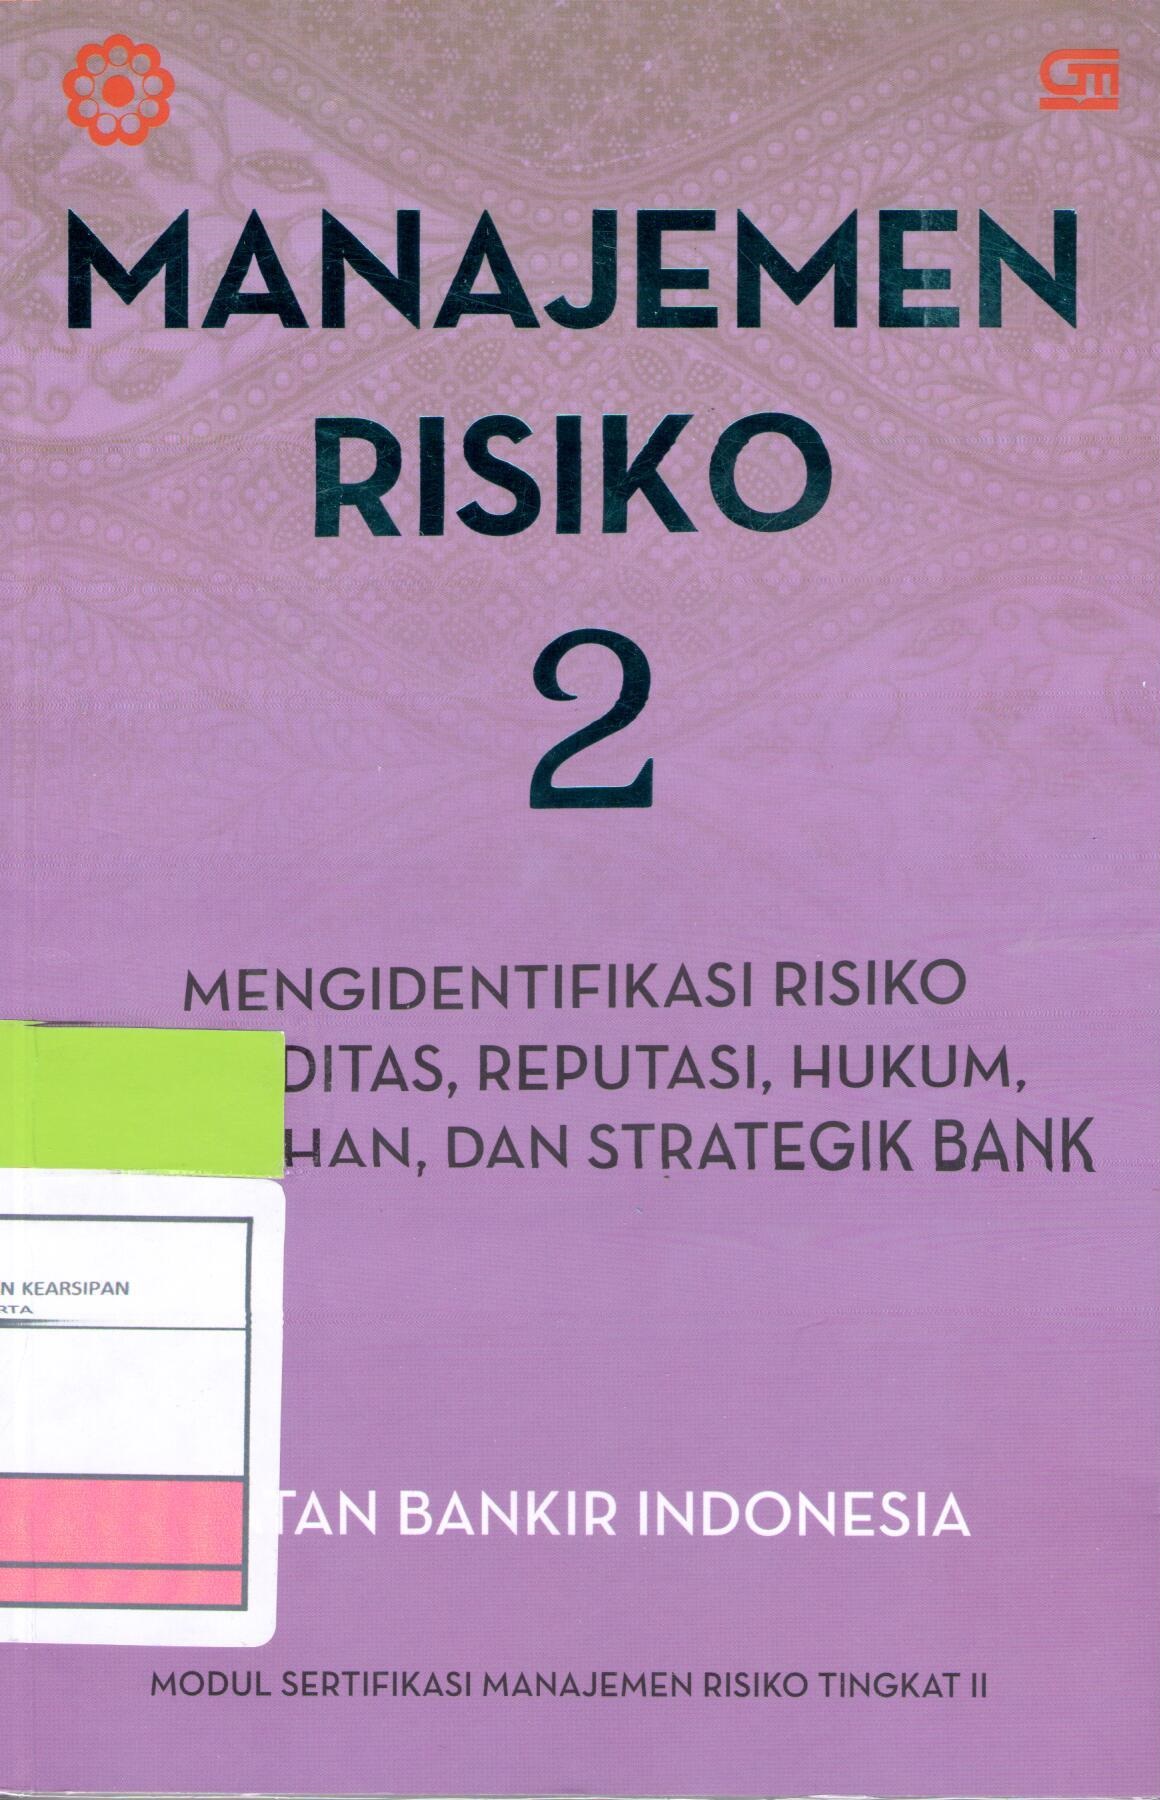 Manajemen Risiko 2 :  Mengidentifikasi Risiko Likuiditas, Reputasi, Hukum, Kepatuhan, dan Strategik Bank